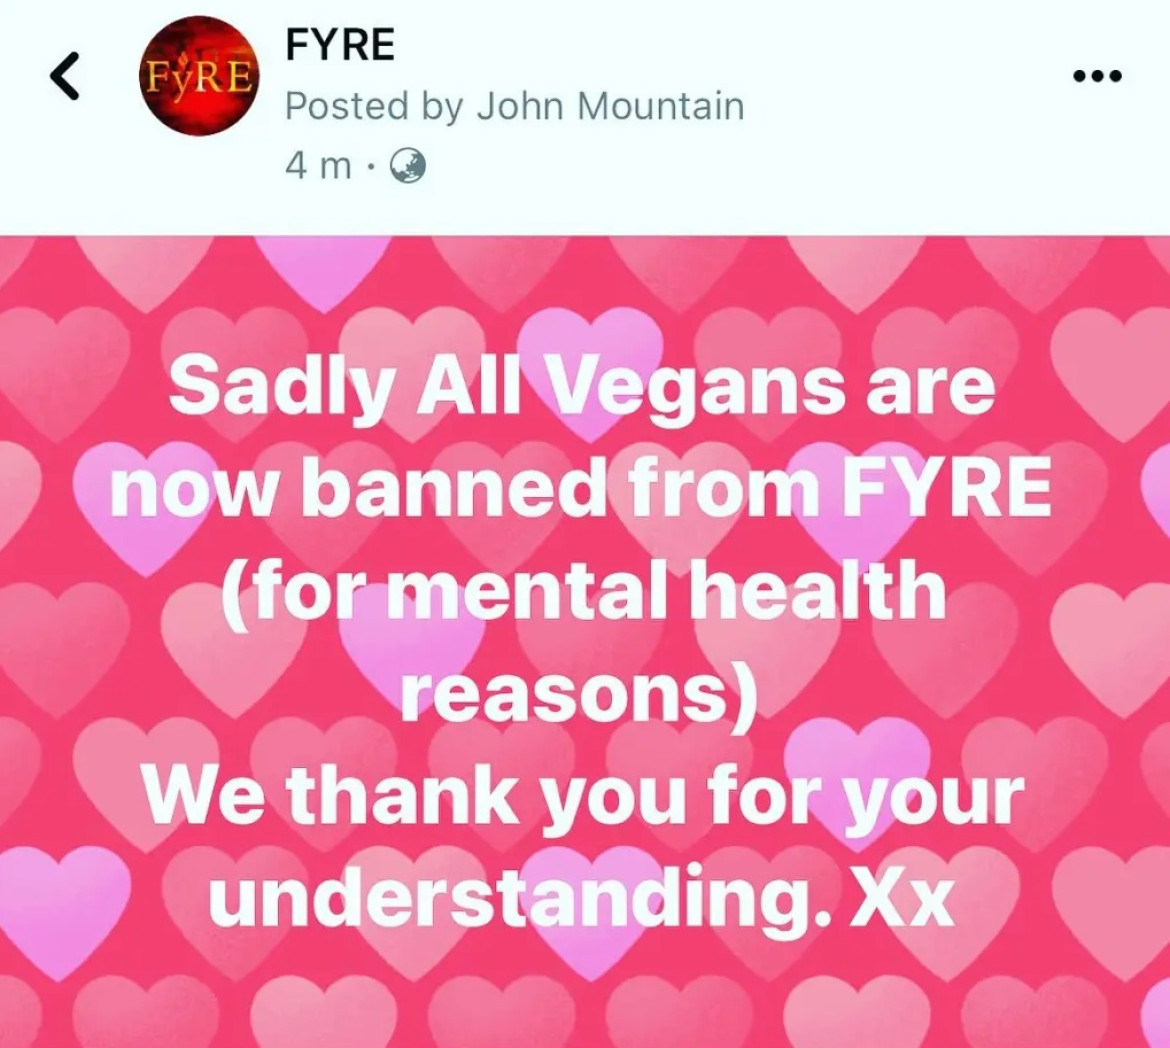 La publicación de Facebook donde Fyre anunció que prohíben a quienes sean veganos en el restaurante. Foto: FYRE/Facebook